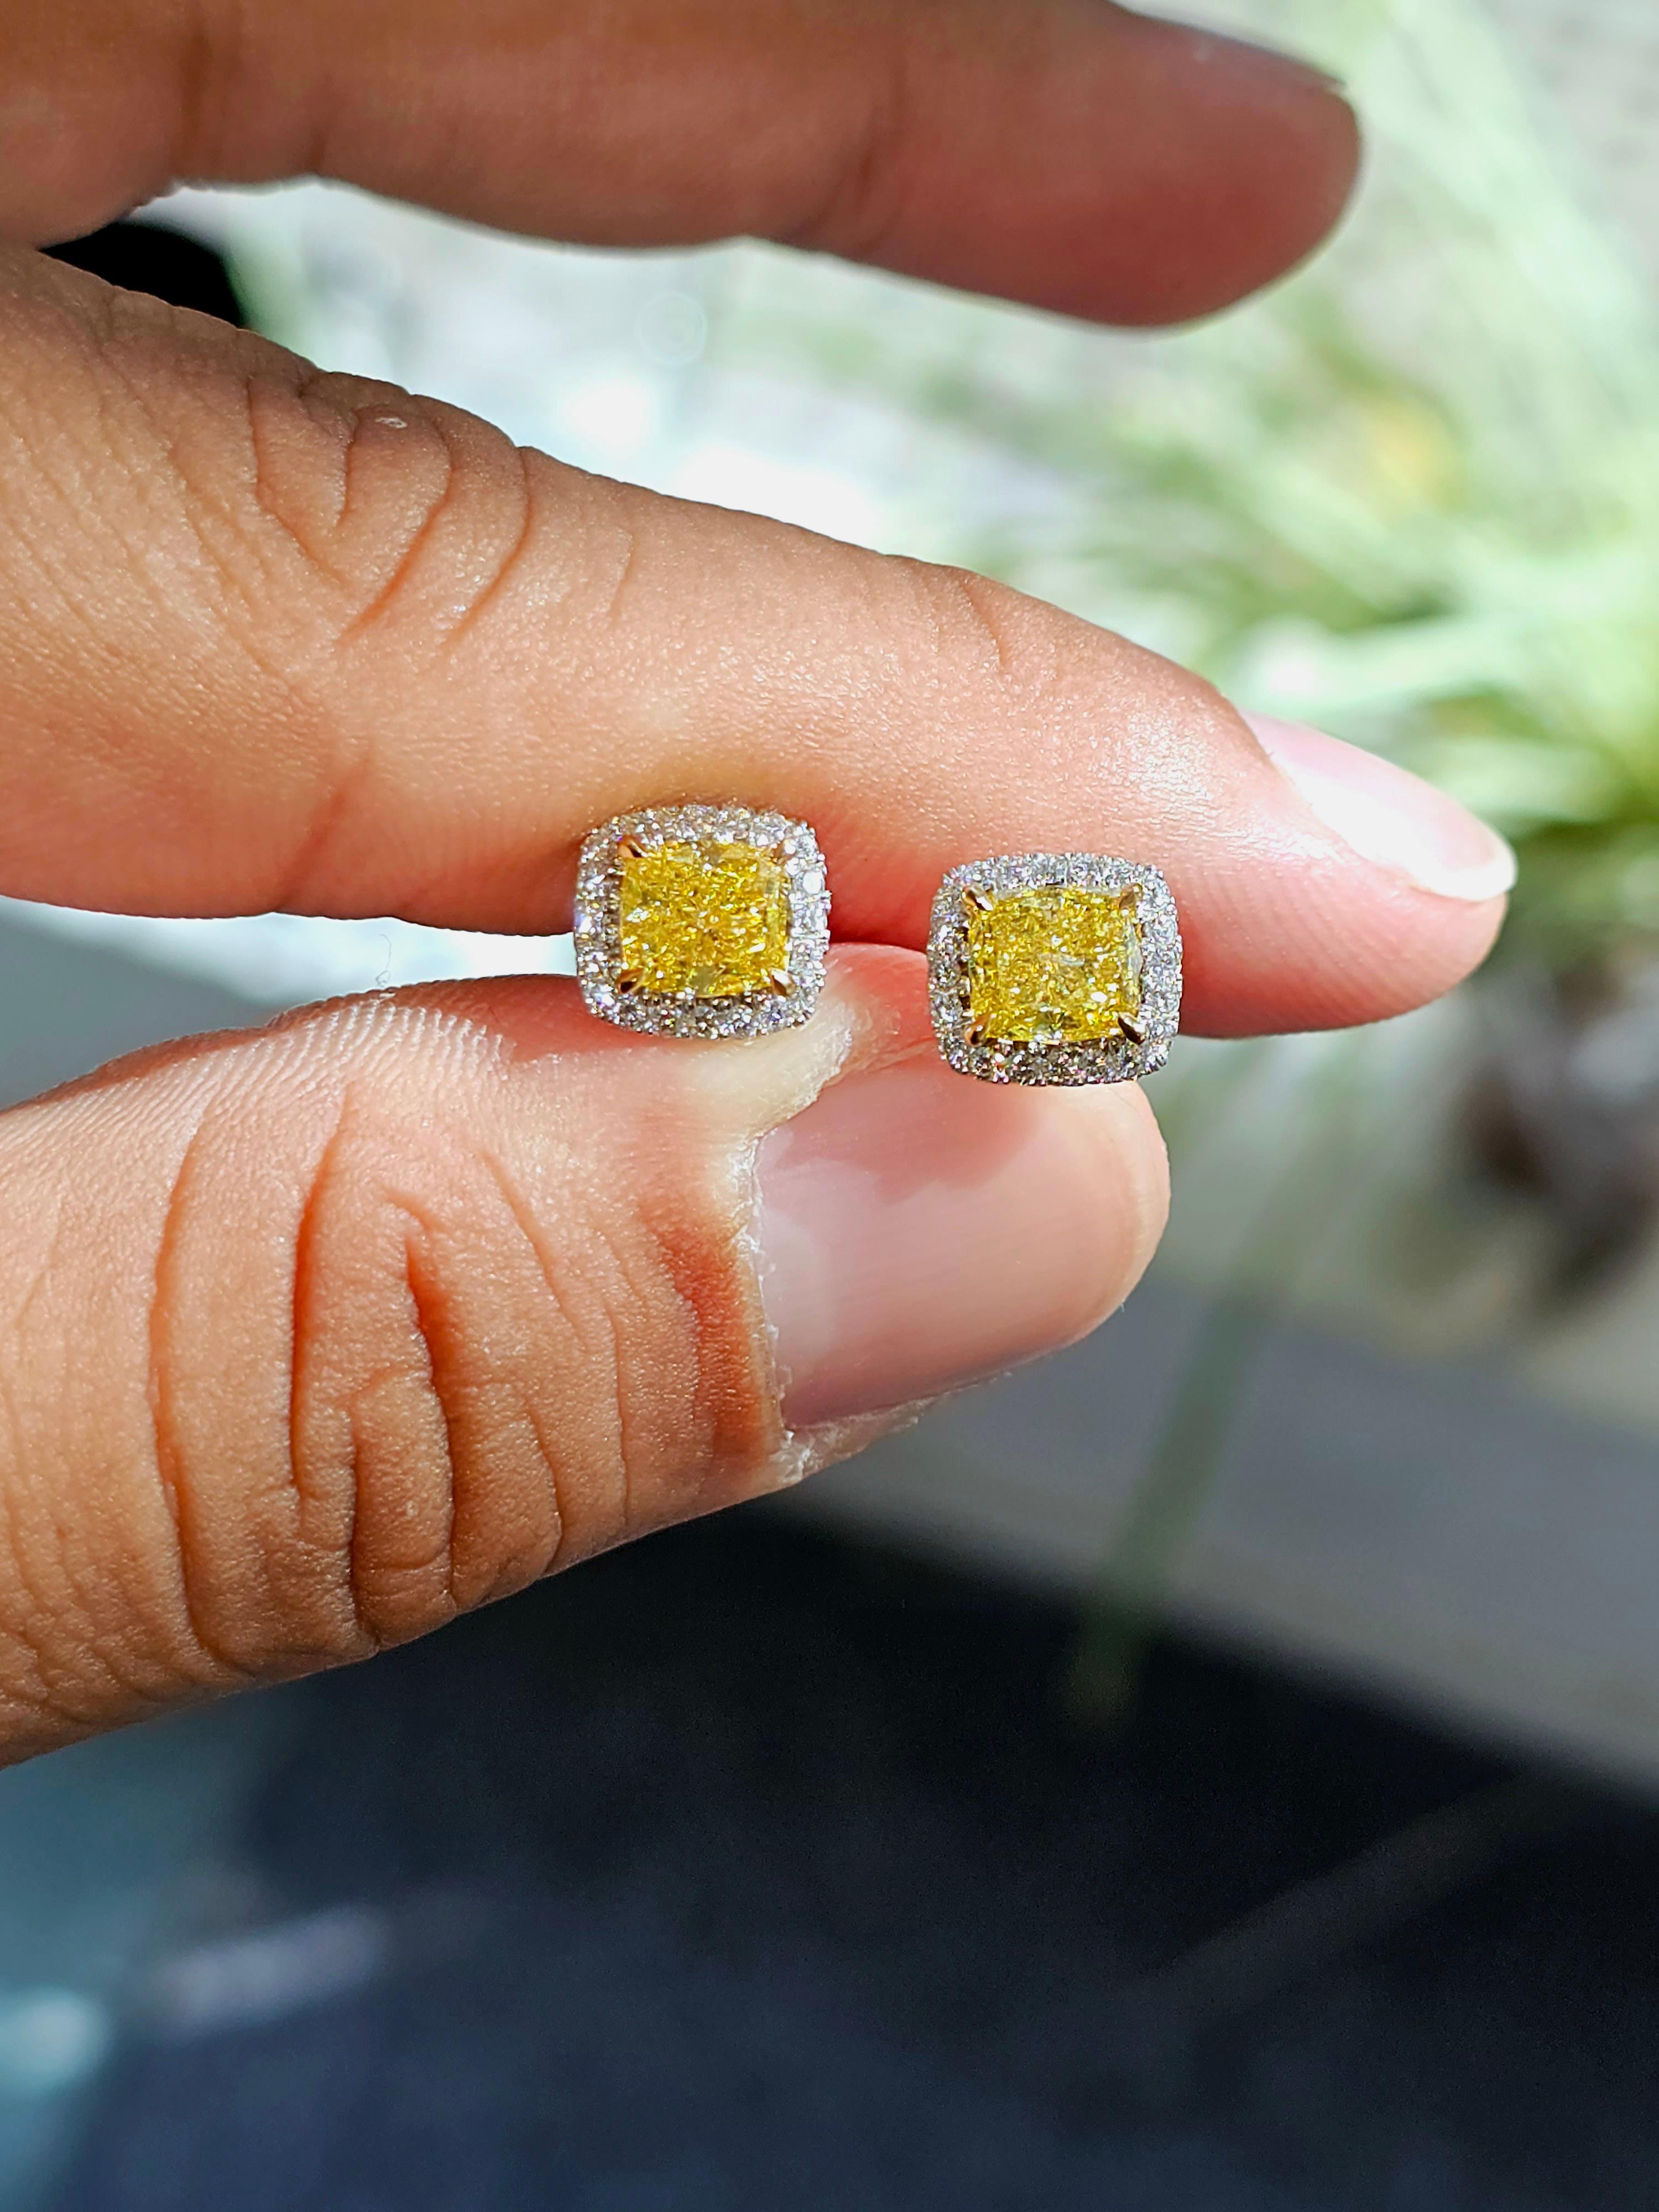 Nous vous présentons une paire de diamants de taille coussin parfaitement assortis, avec le plus haut degré de teinte dorée certifié par le laboratoire GIA, Fancy Vivid-Yellow. 

La paire surdimensionnée de 2,44cts (1,21cts et 1,23cts